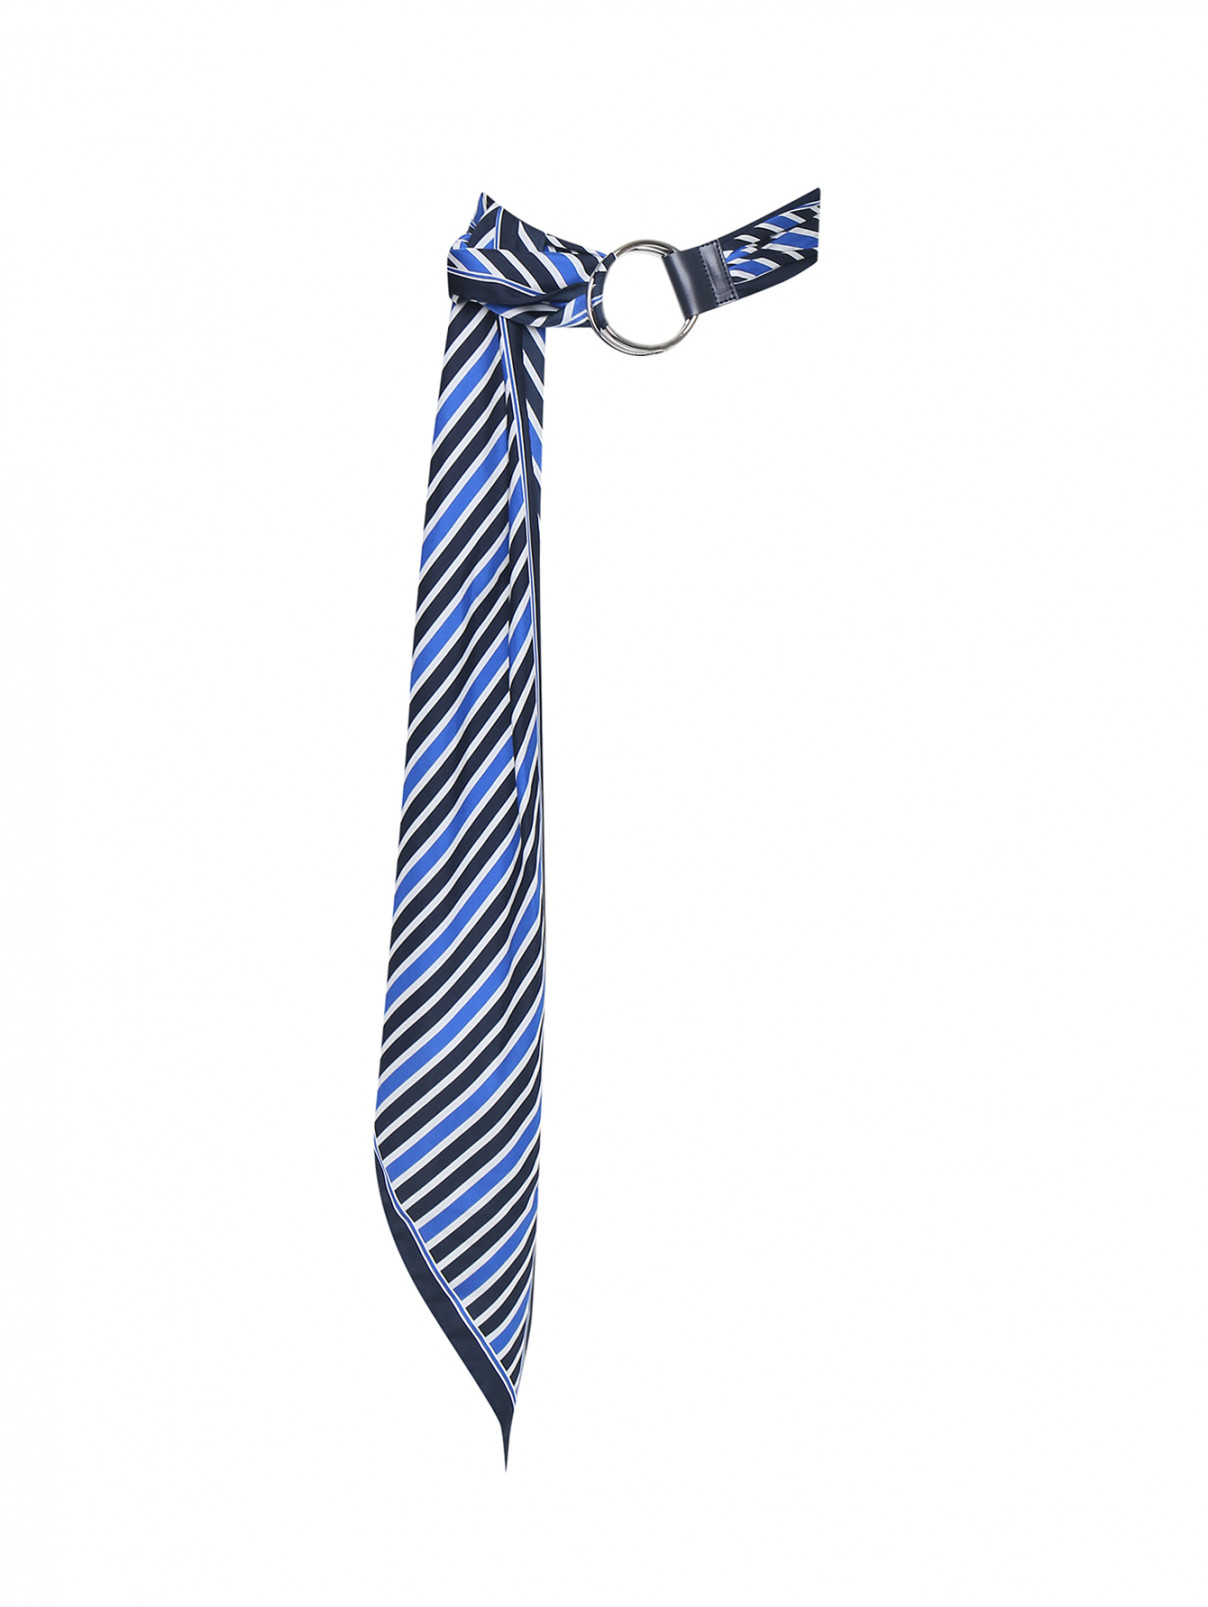 Пояс из текстиля с узором полоска Sportmax Code  –  Общий вид  – Цвет:  Синий